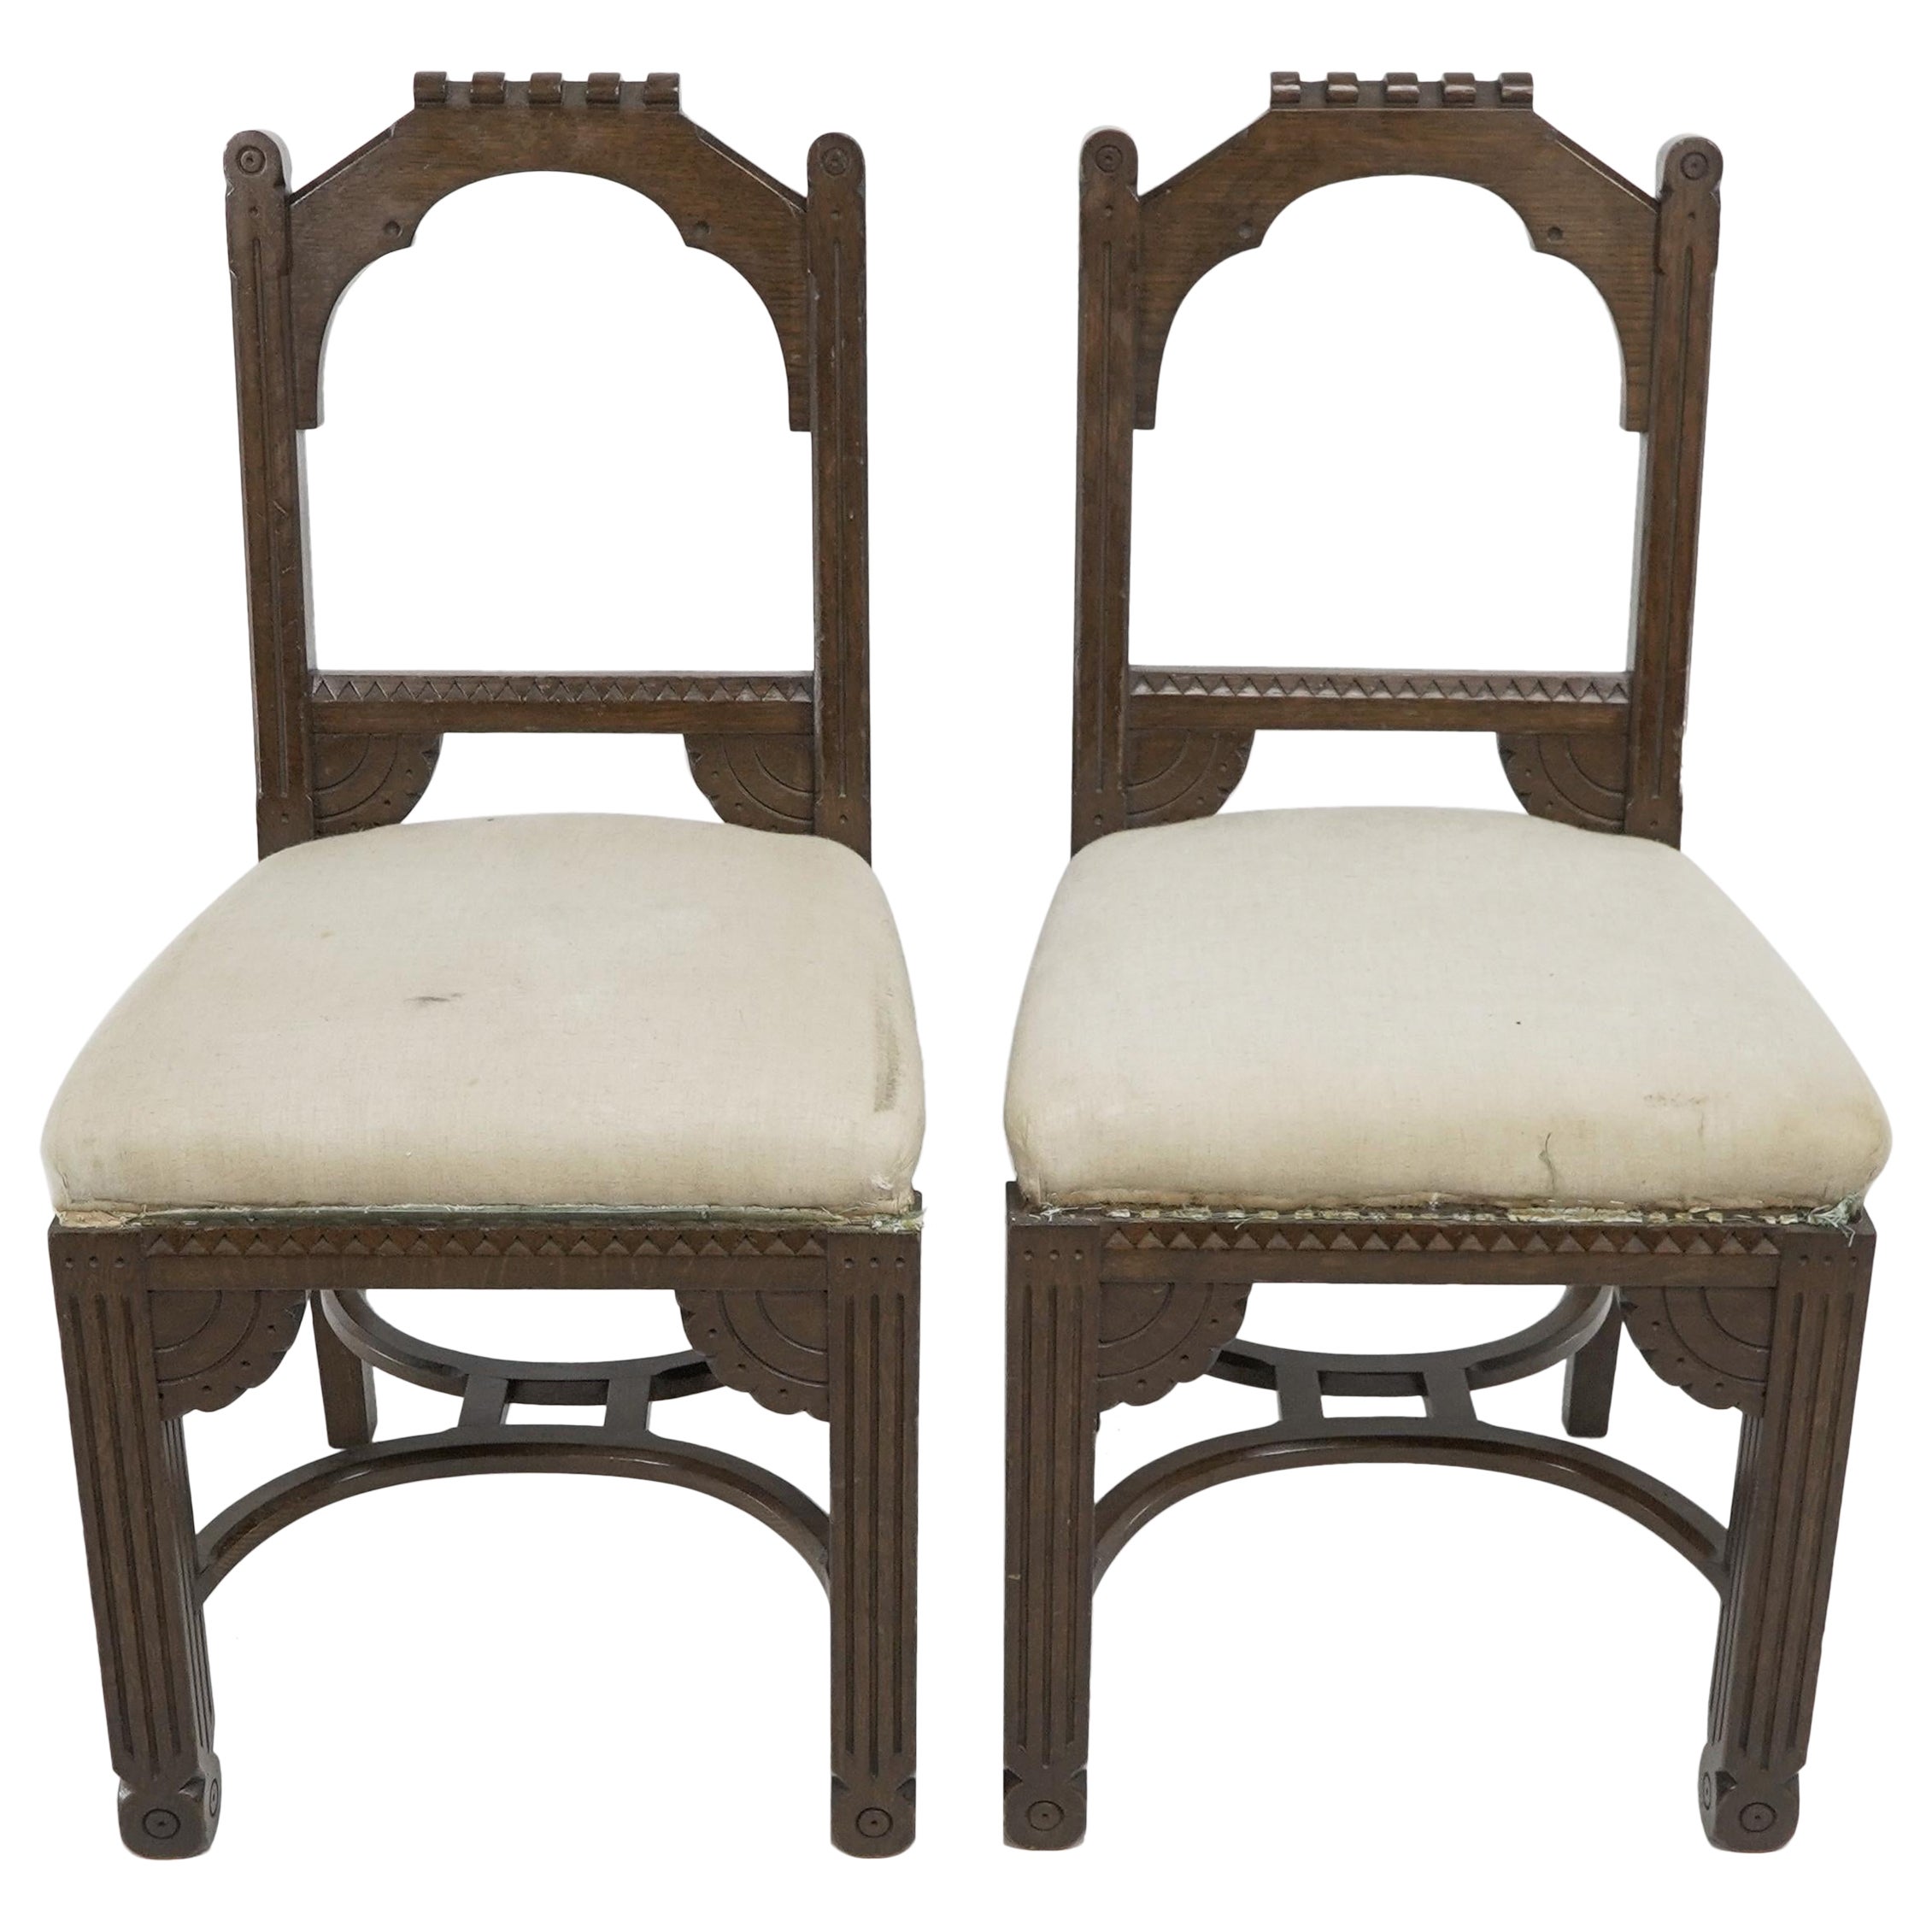 R Boyd. im Stil von Dr. C. Kommode. Ein Paar Beistellstühle aus Eichenholz des Aesthetic Movement mit 1/4-Mond-Details und doppelten Reifenträgern. Möbel von R. Boyd wurden in der Furniture Gazette abgebildet, als Dr. C. Dresser zwischen 1880 und